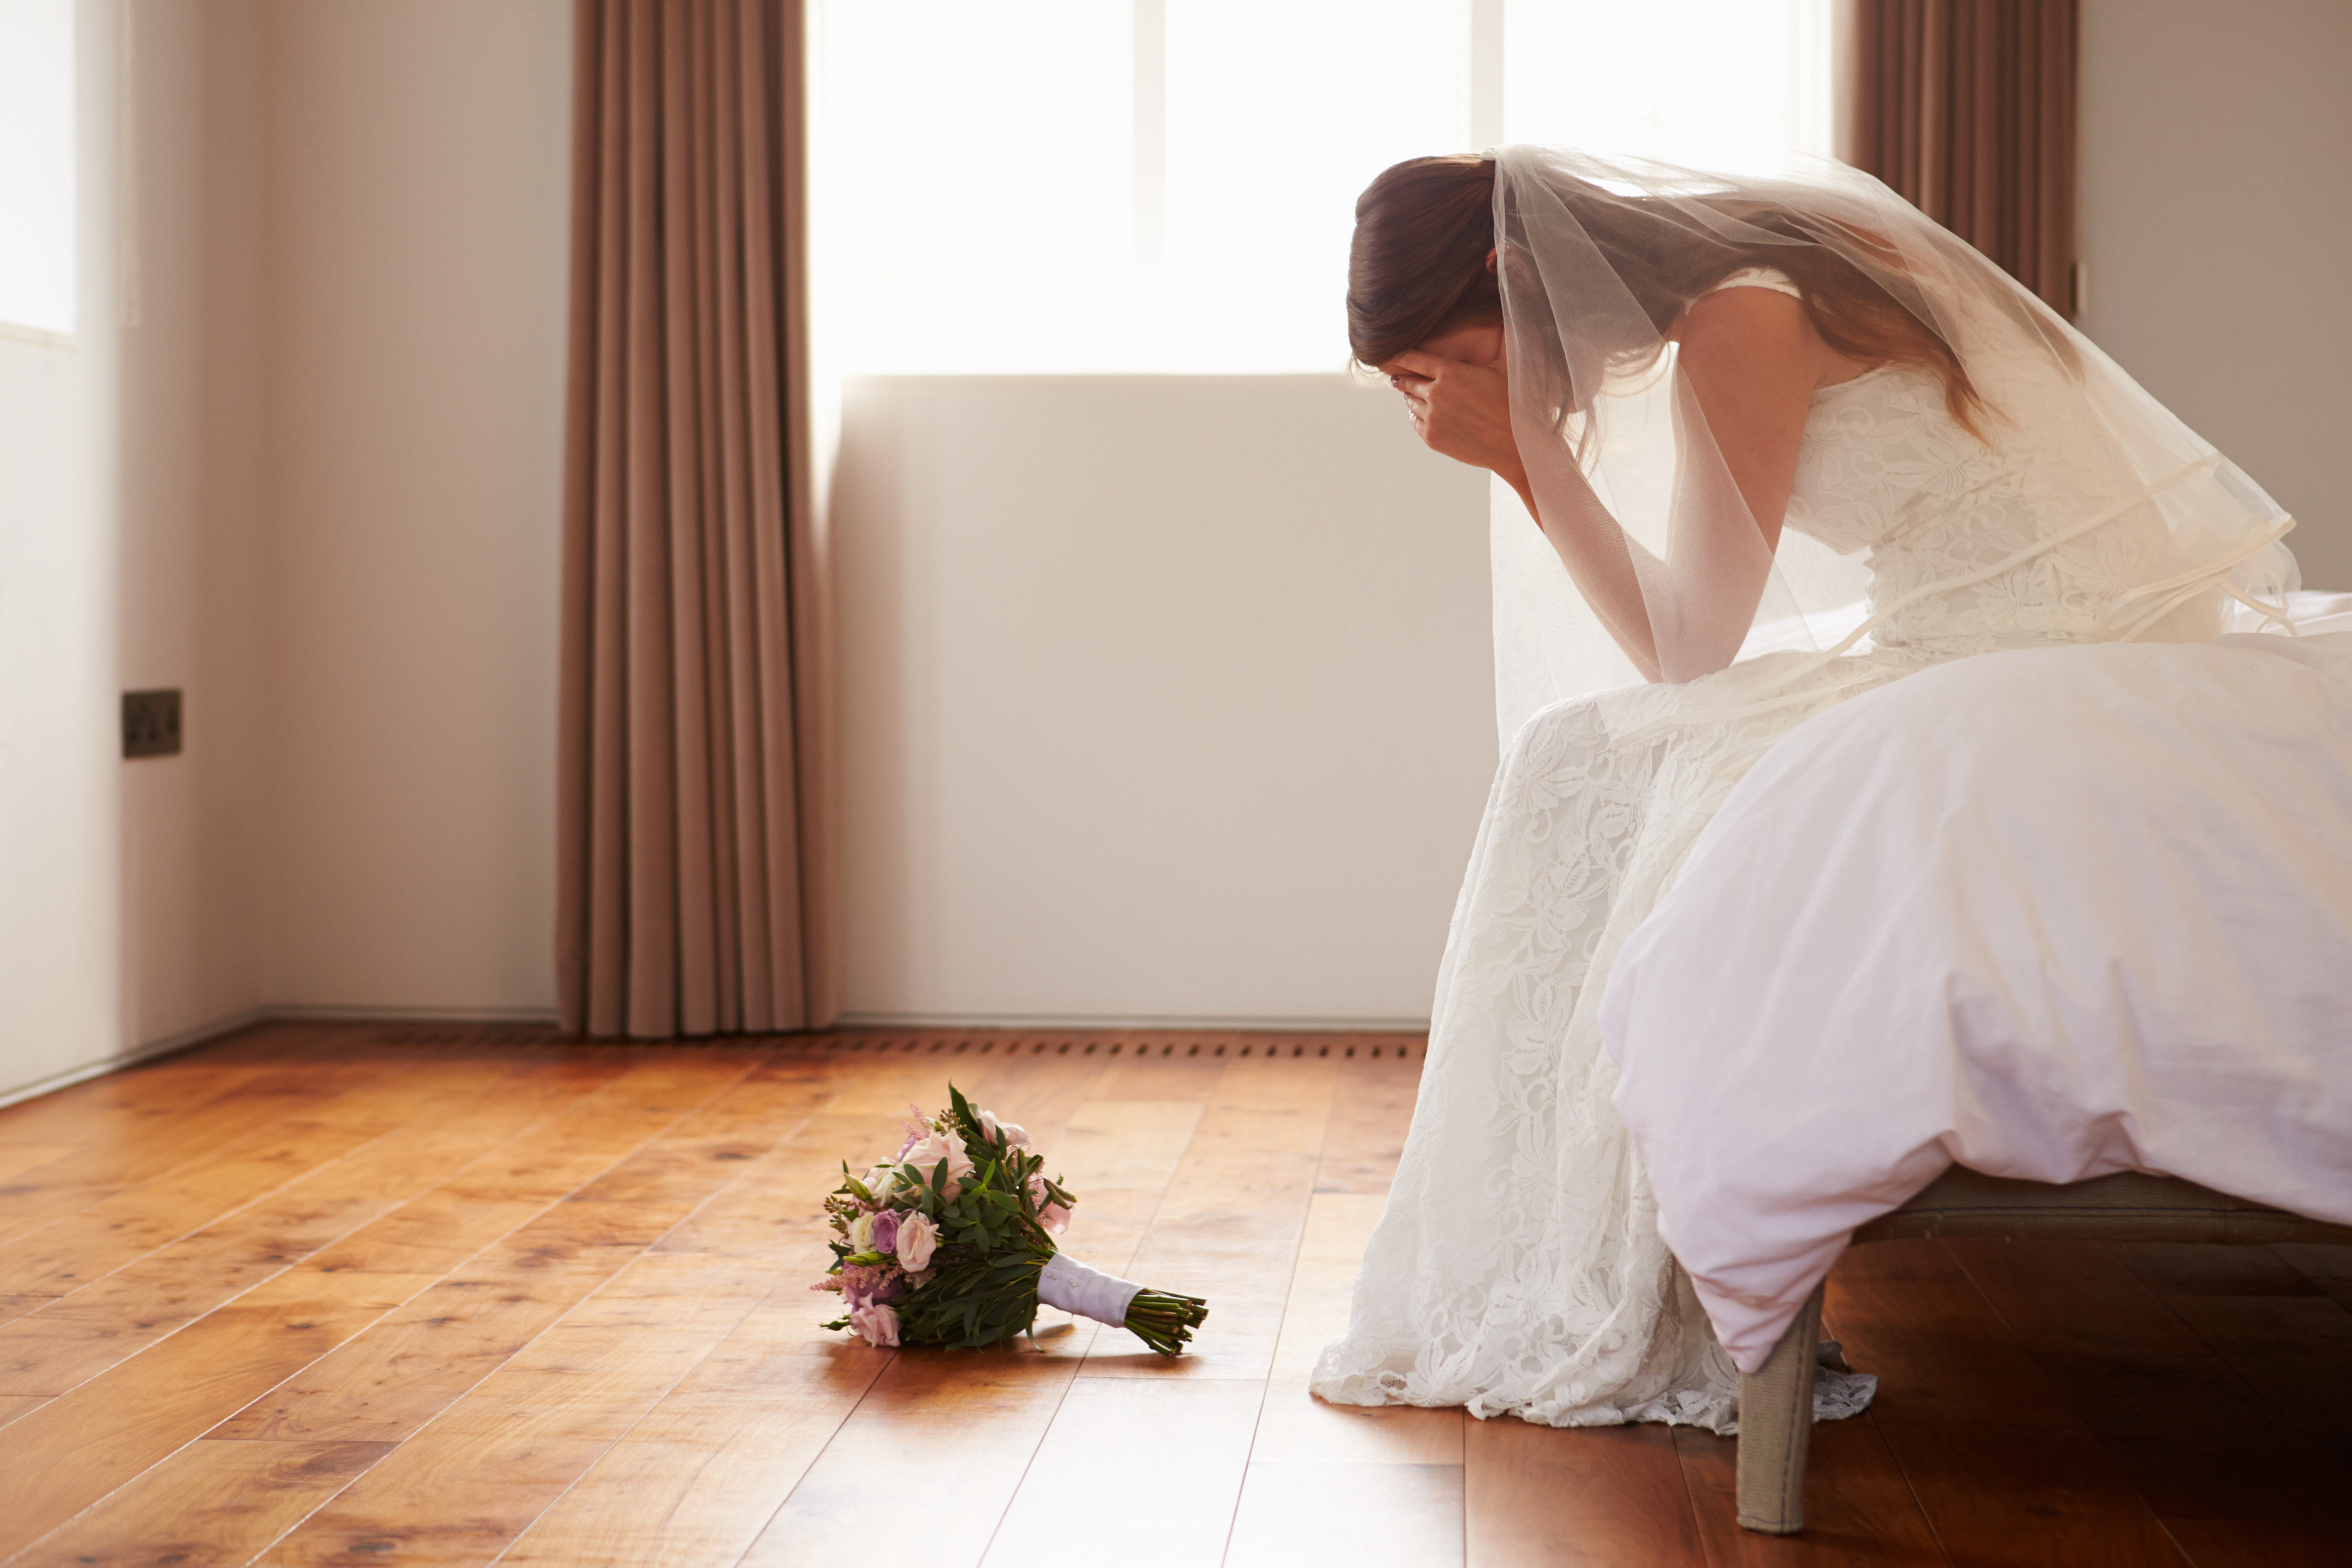 Une mariée triste assise dans une pièce | Source : Shutterstock